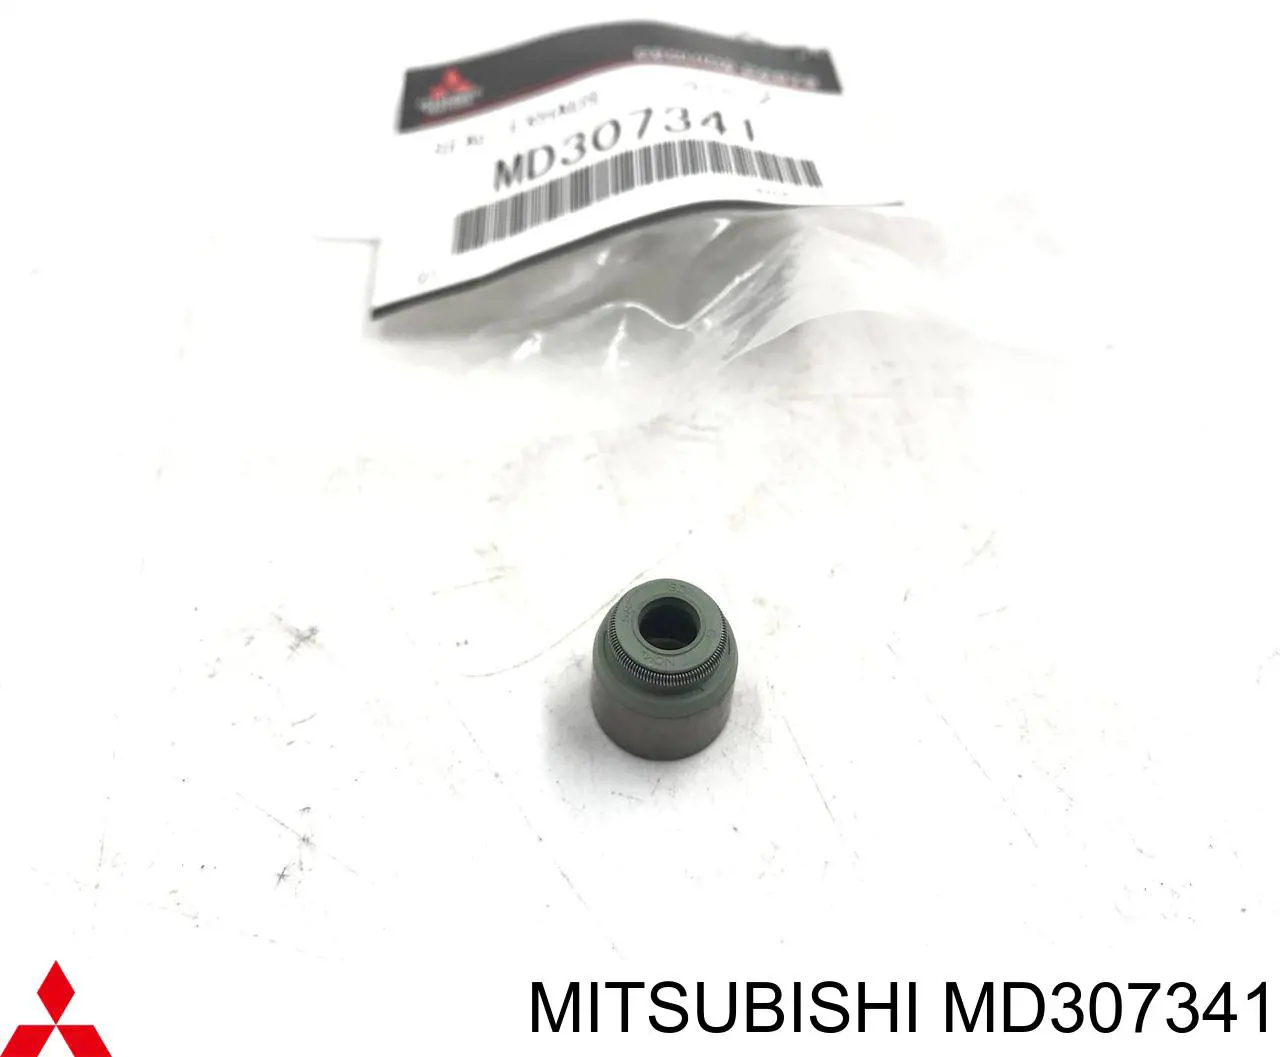 MD307341 Mitsubishi anillo de junta, vástago de válvula de escape